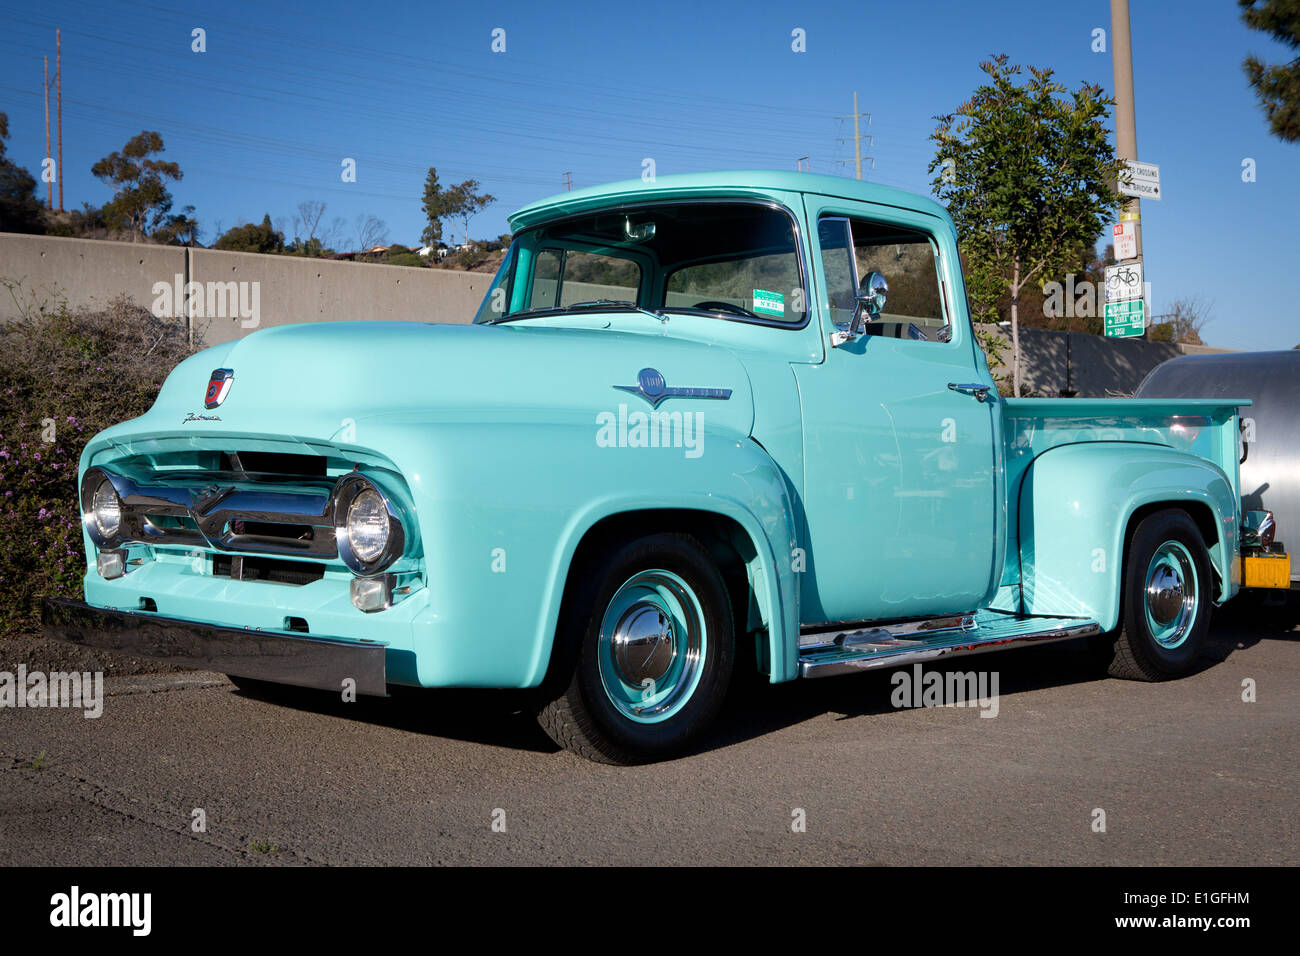 Luminose turquois vintage Ford F100 dal 1956, presso la Big3 swap meet, presso il parcheggio di Qualcomm Stadium, nel marzo 2014. Foto Stock